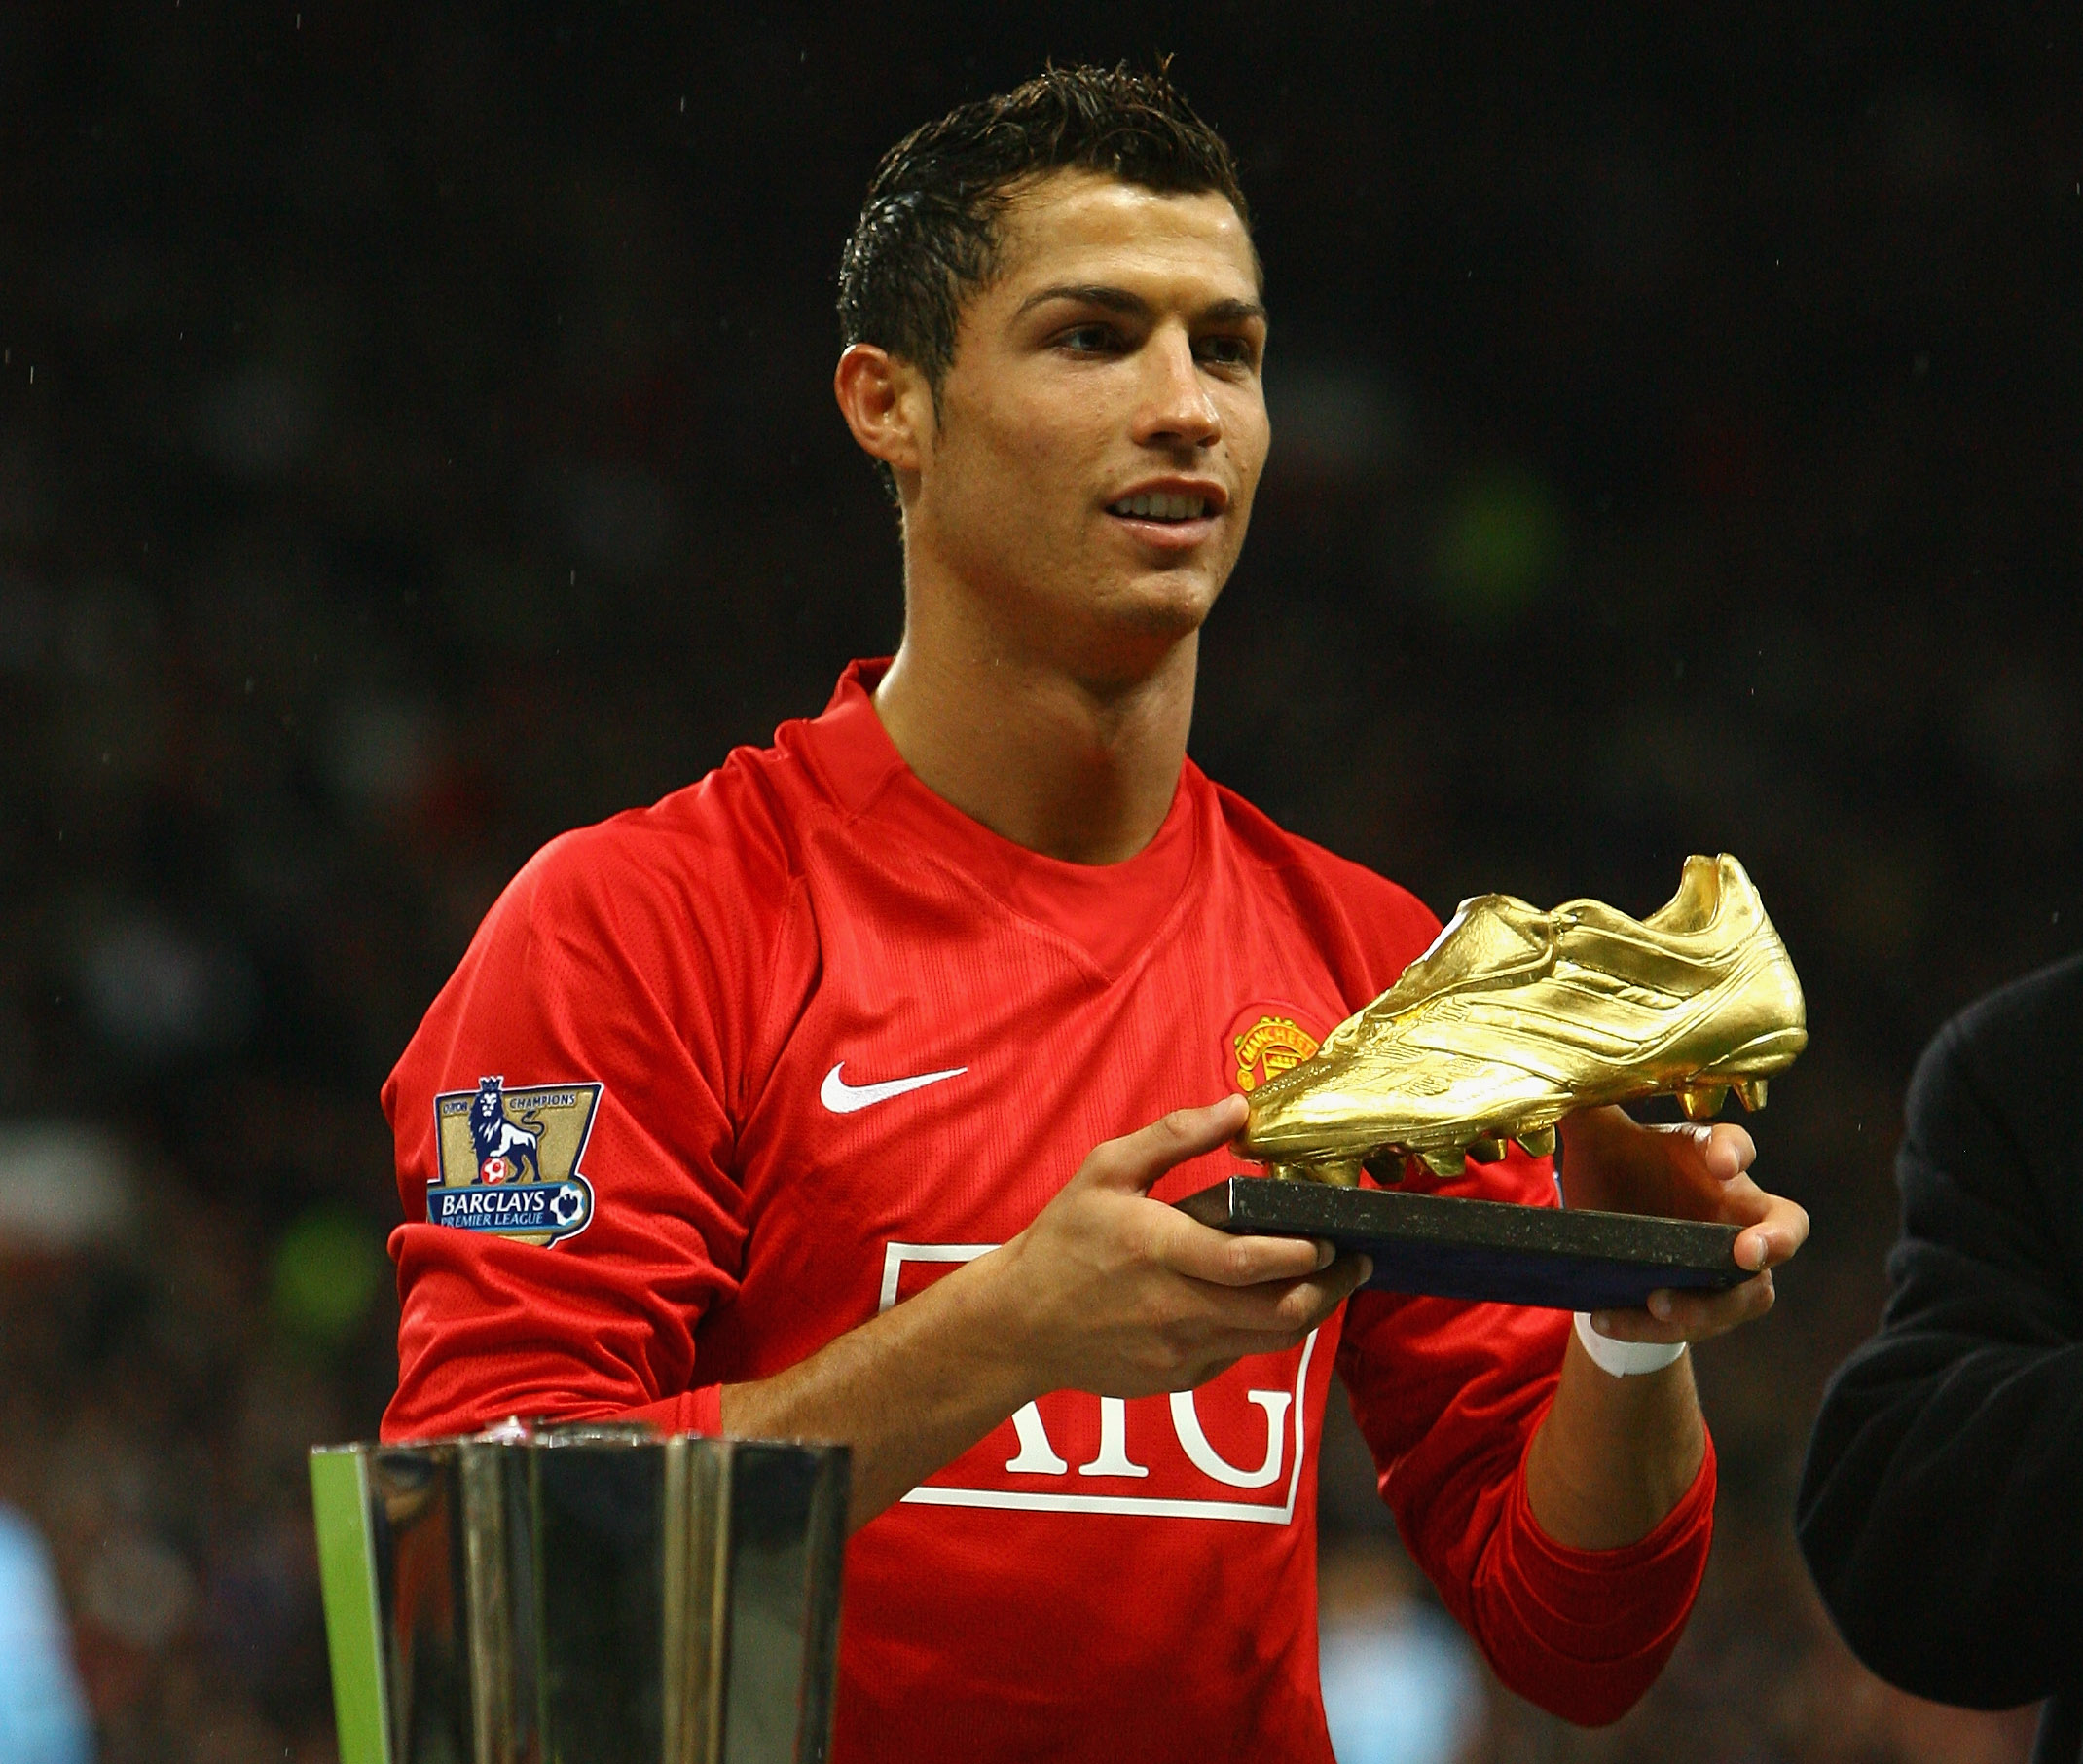 Tải ảnh Ronaldo ở Manchester United cực chất